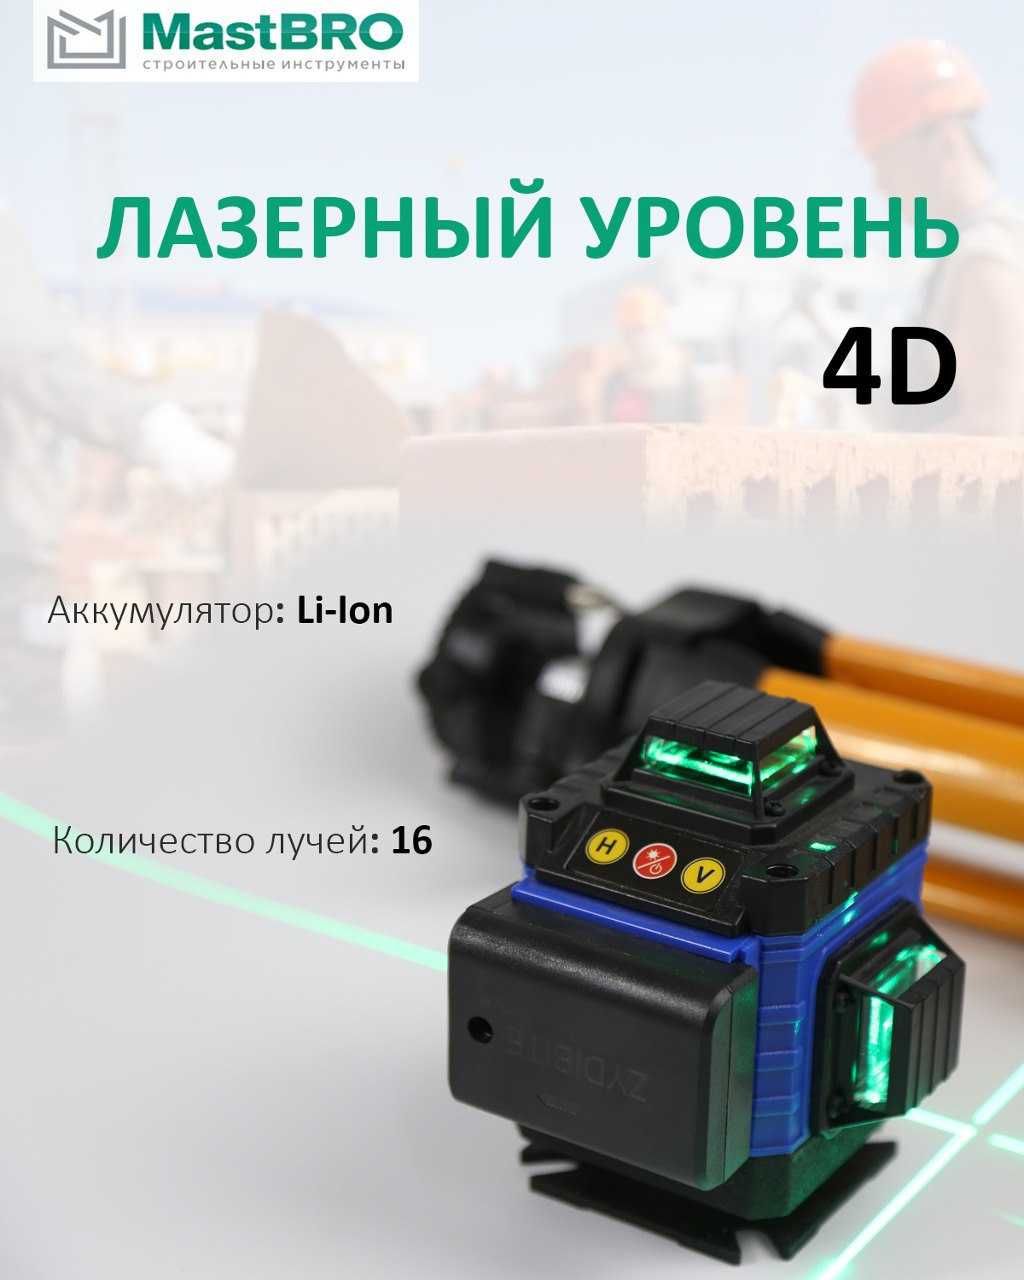 Лазерный уровень 4D MastBRO